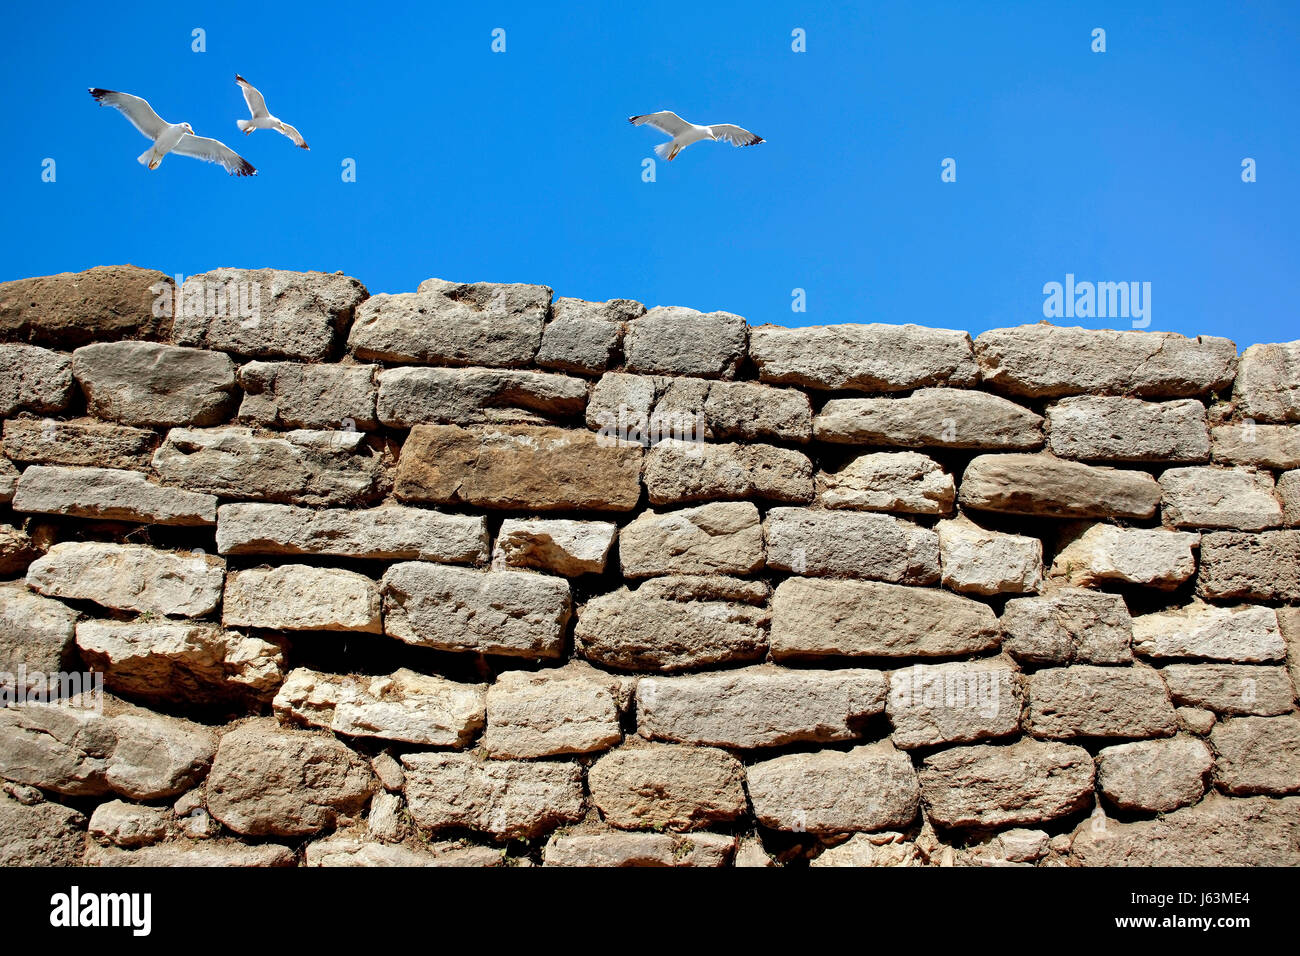 La liberté d'oiseaux de l'espace liberté Wall protect protection sécurité gull mouette libre Banque D'Images